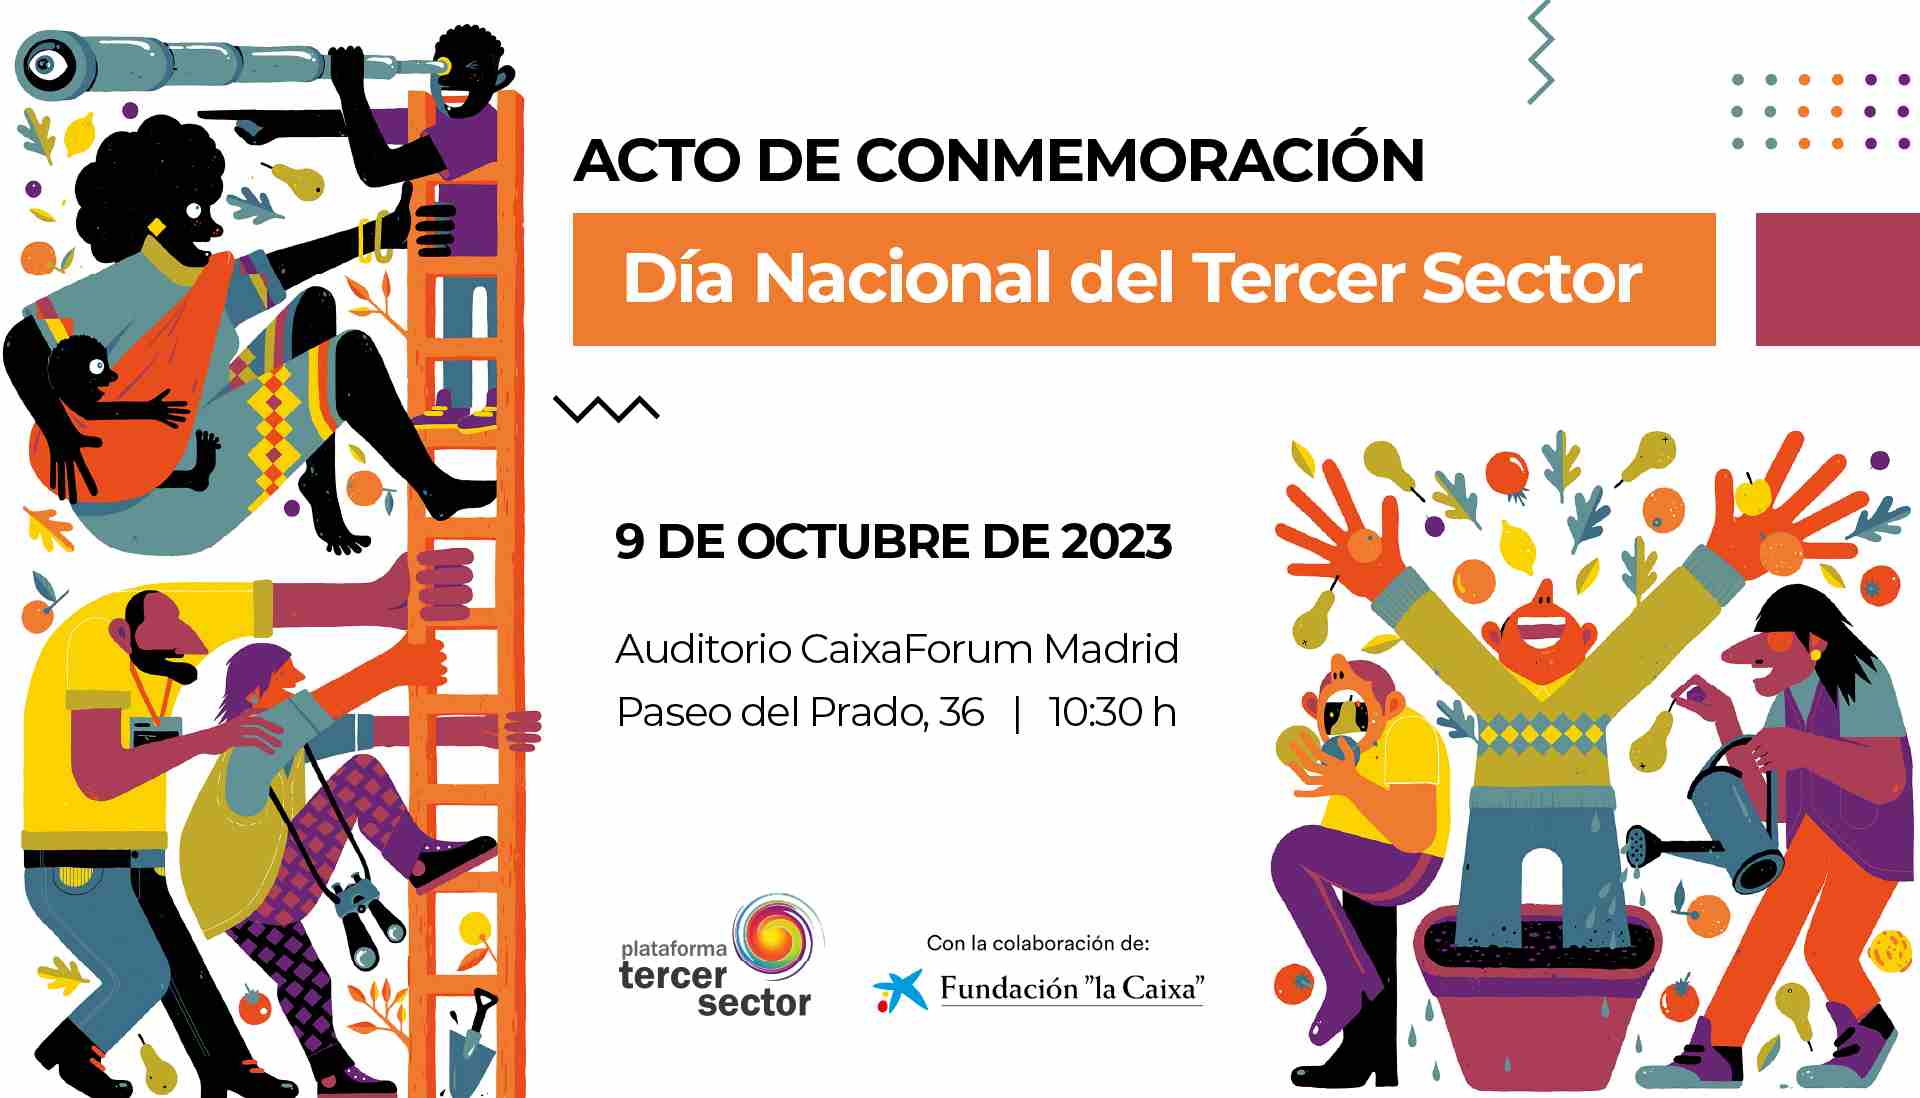 acto de conmemoración dia del tercer sector 9 de octubre de 2023